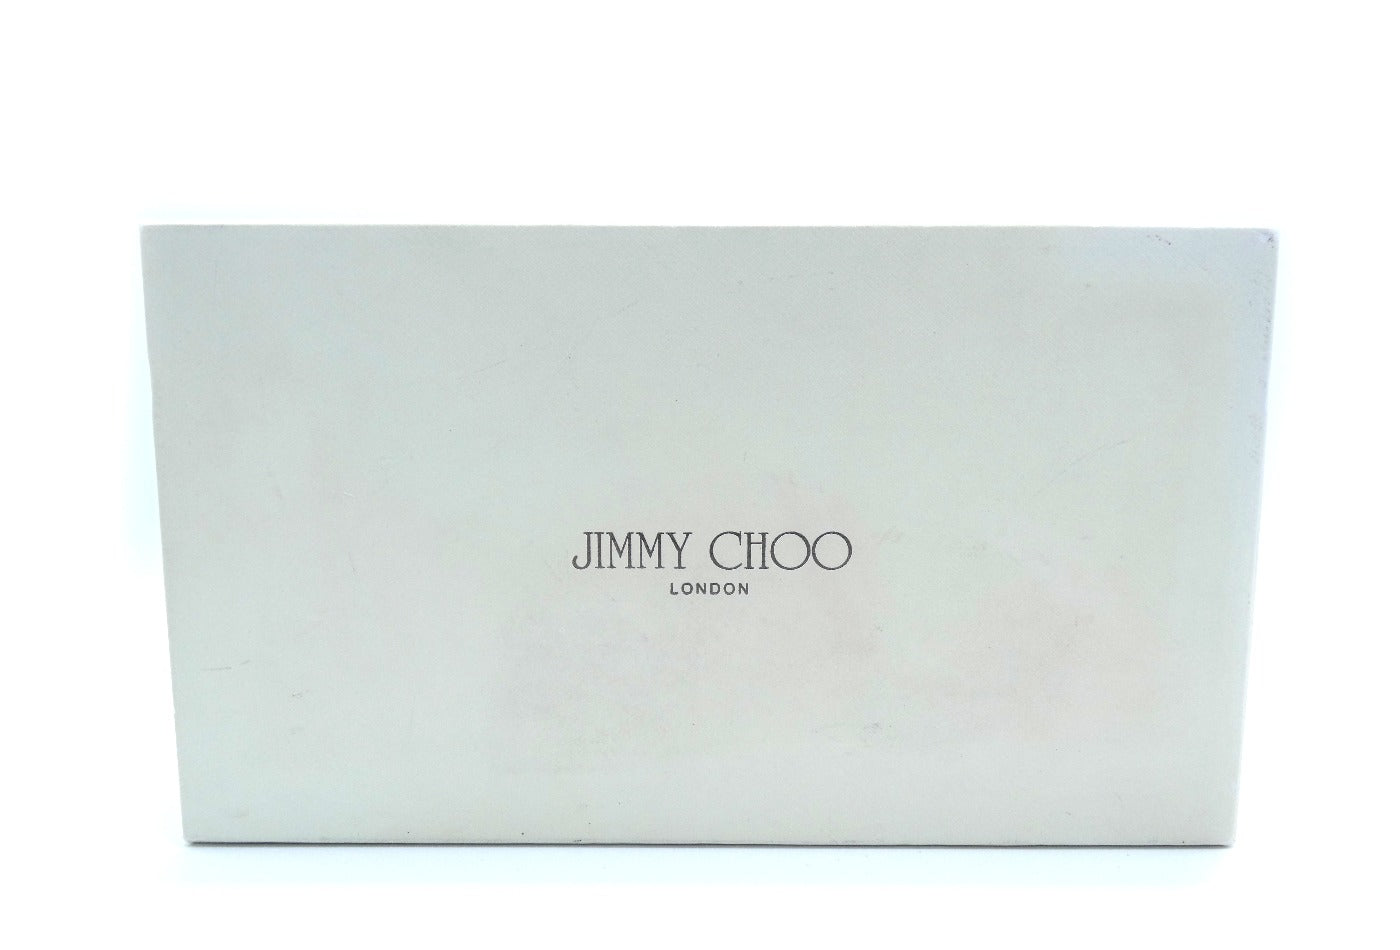 Jimmy Choo Leopard Patent Leather Zippy Wallet Wallet Jimmy Choo